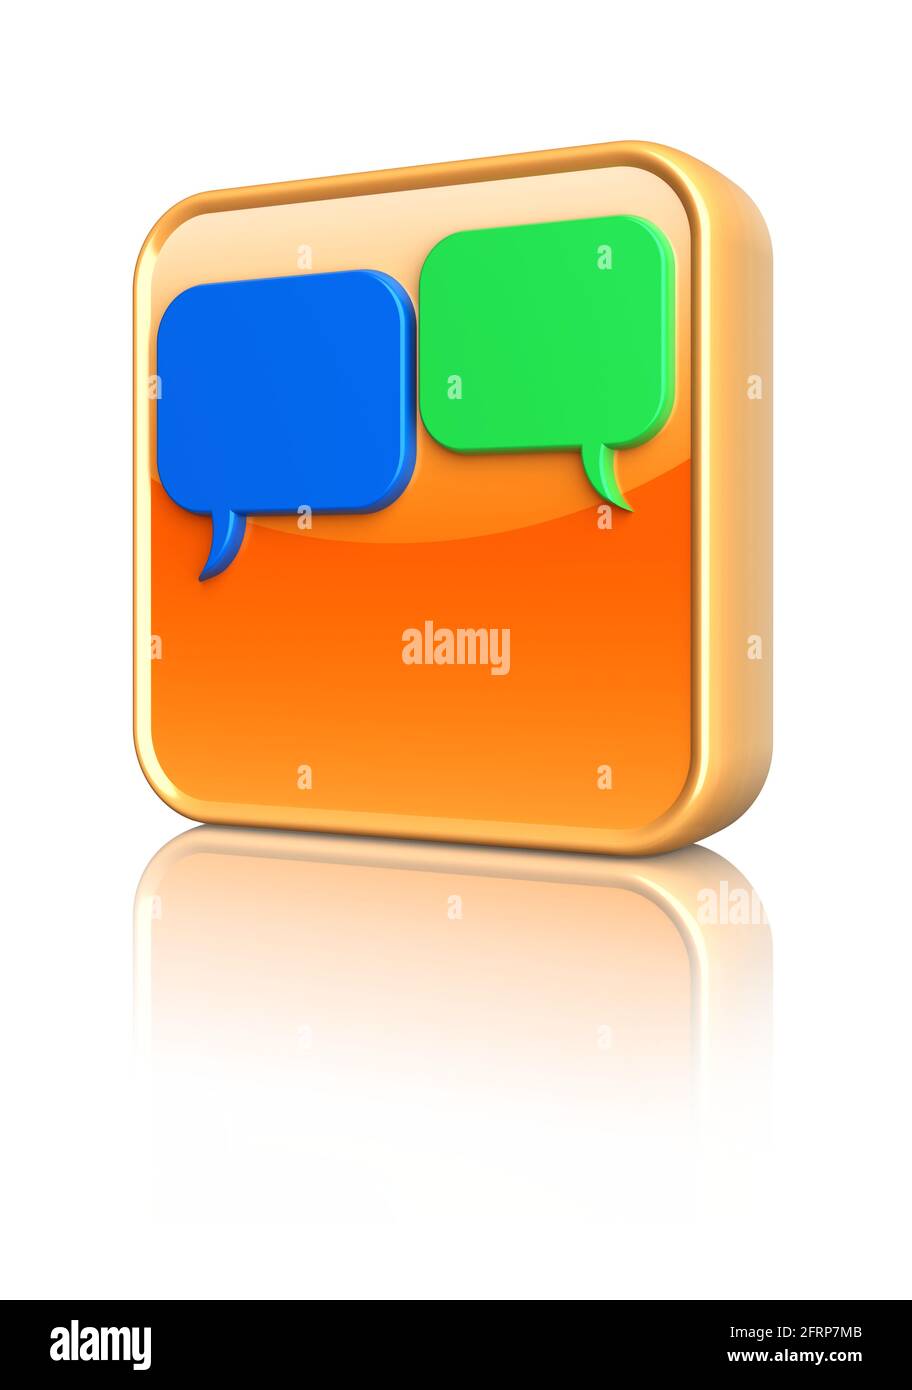 Botón de icono de chat amarillo 3D con burbujas de voz azules y verdes. Foto de stock